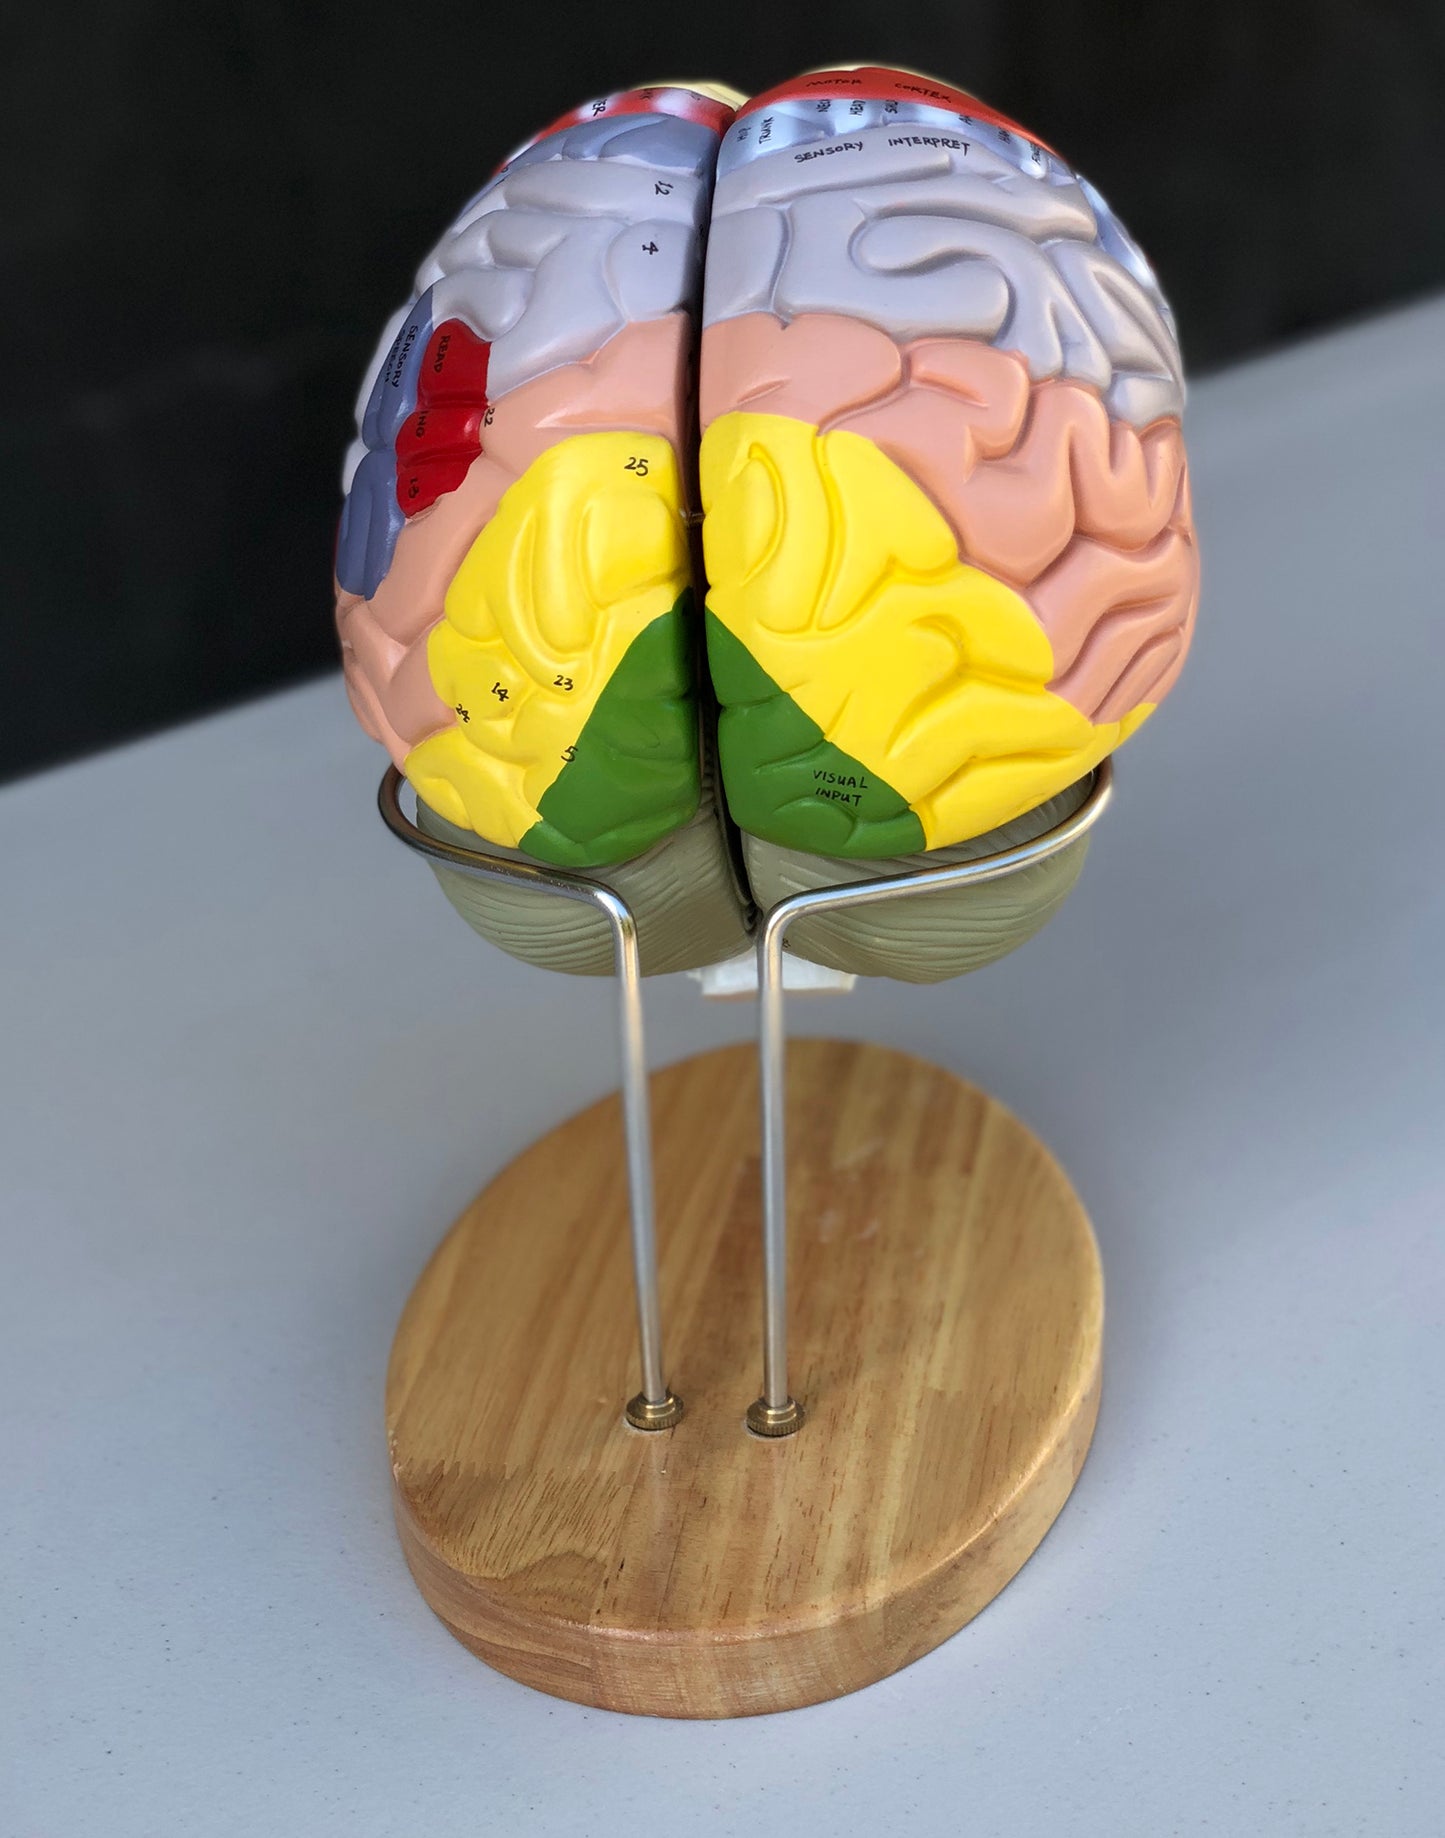 Förstorad hjärnmodell med många områden i pedagogiska färger. Kan delas upp i 4 delar